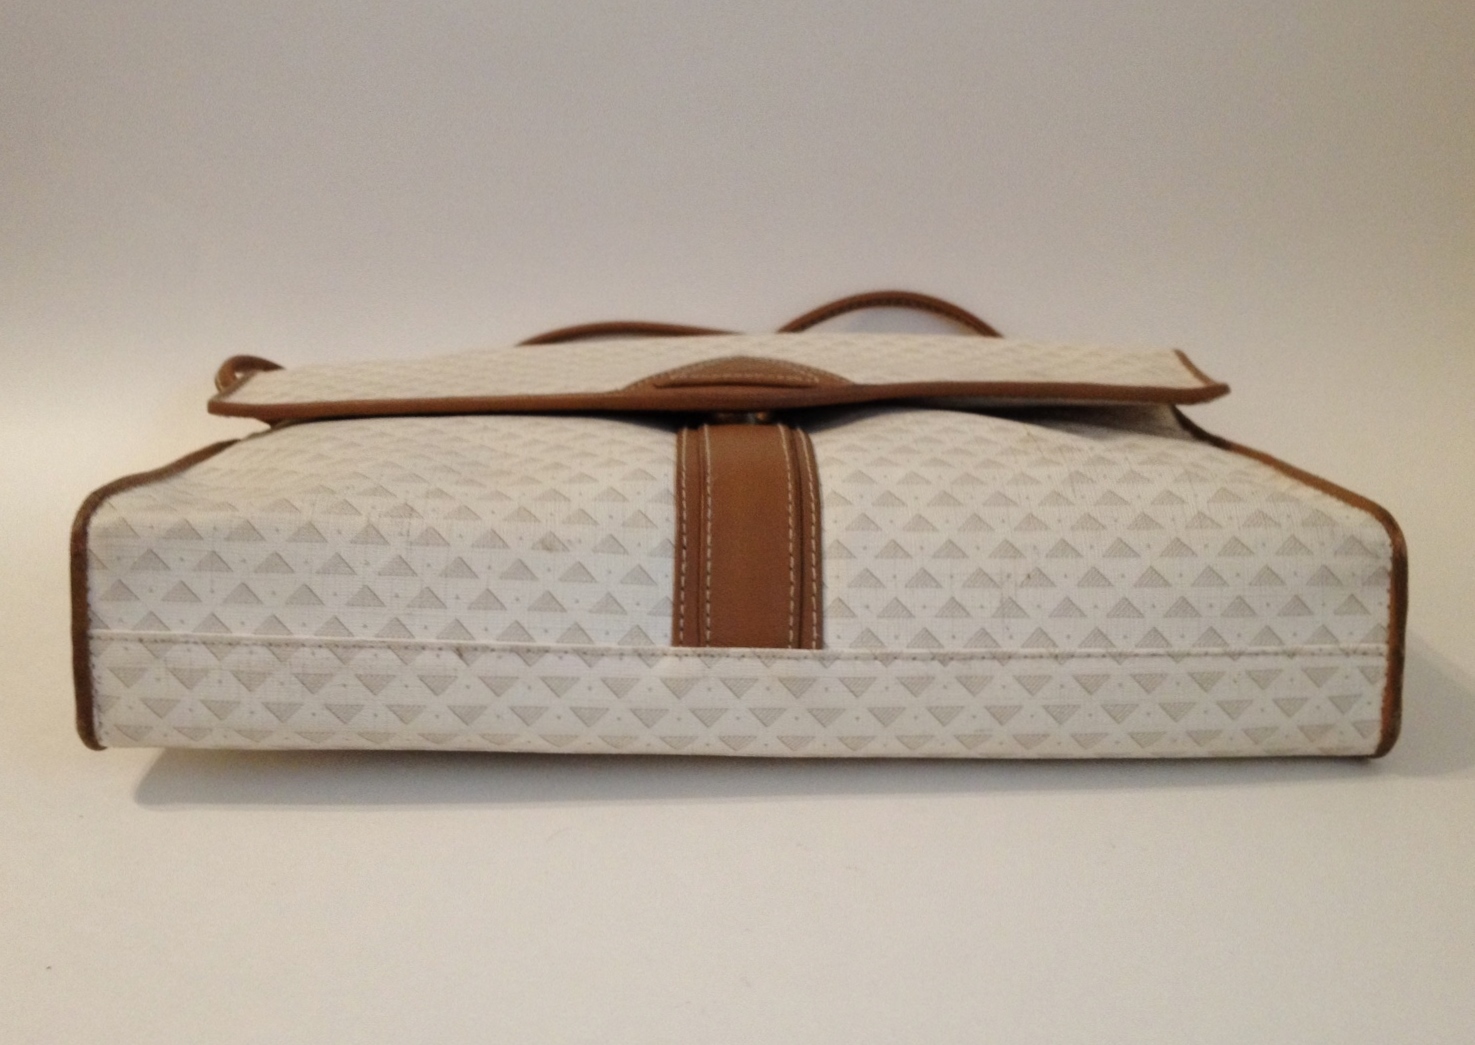 Liz Claiborne Purse Handbag Cream Off White Faux Croc Tote Satchel Shoulder  Bag for Sale in Quartz Hill, CA - OfferUp